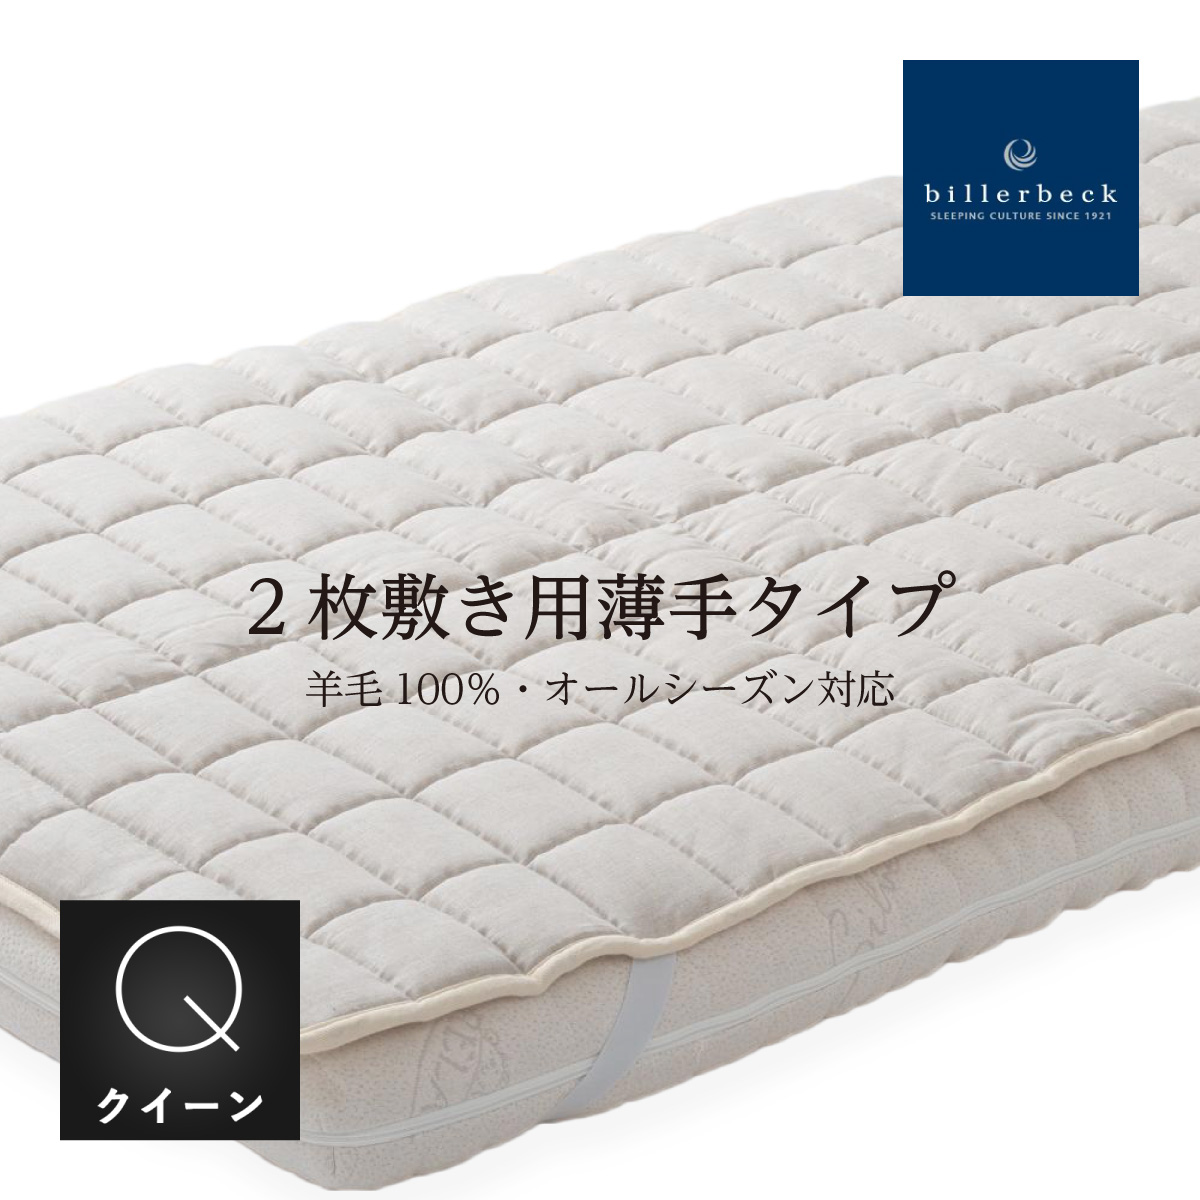 ドイツ ビラベック社製 羊毛ベッドパッド セミダブルサイズ GOTS認定 